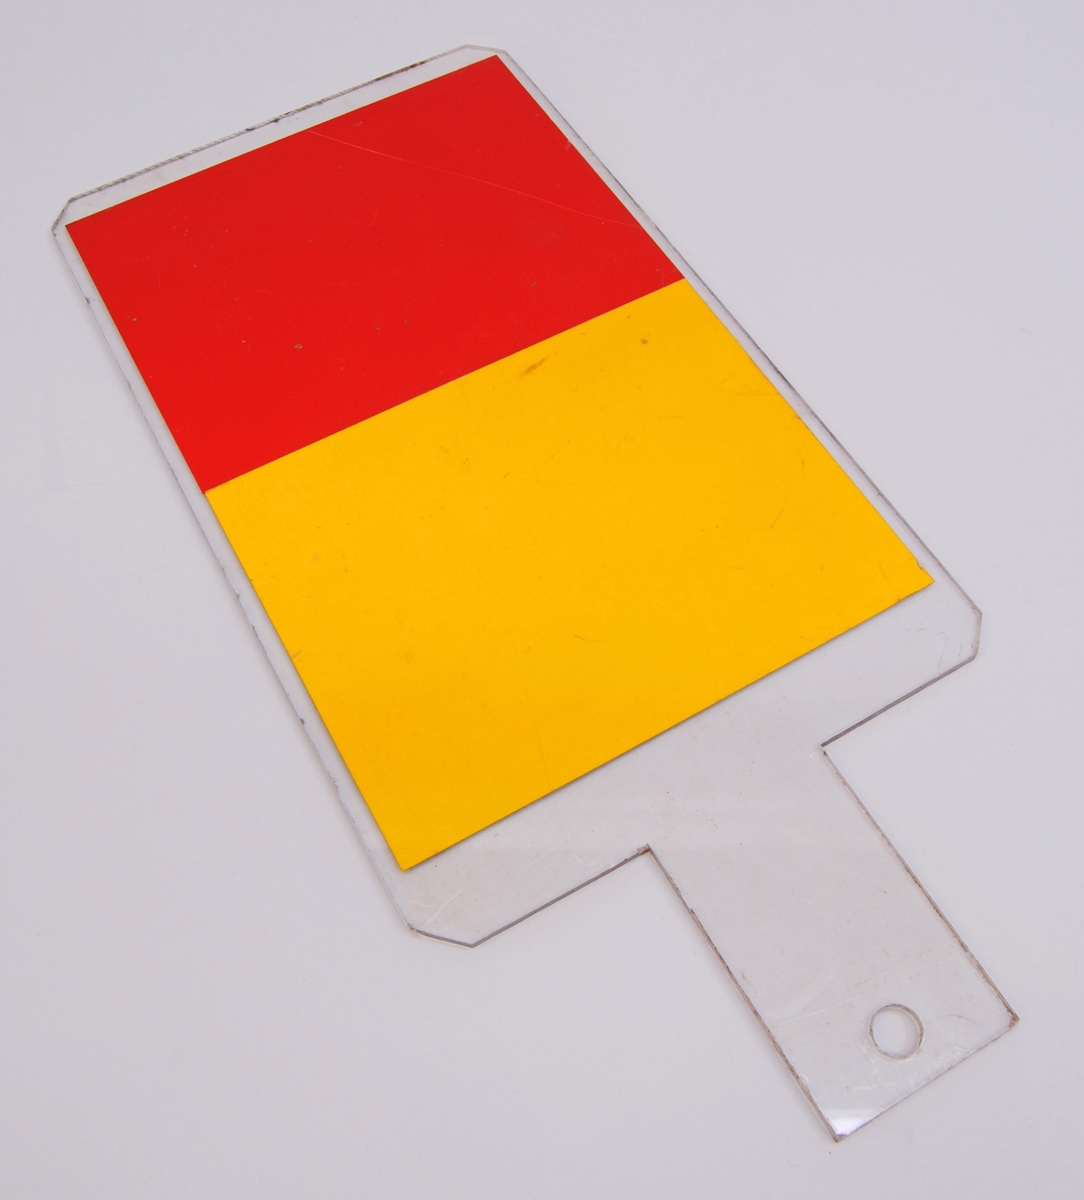 Slutsignalsskärm av genomskinligt plast. Den är formad som en stående rektangel med beskurna hörn. I ena änden finns ett handtag med ett hål i ena änden. 

Den ena halvan av skärmen är gul och den andra röd.